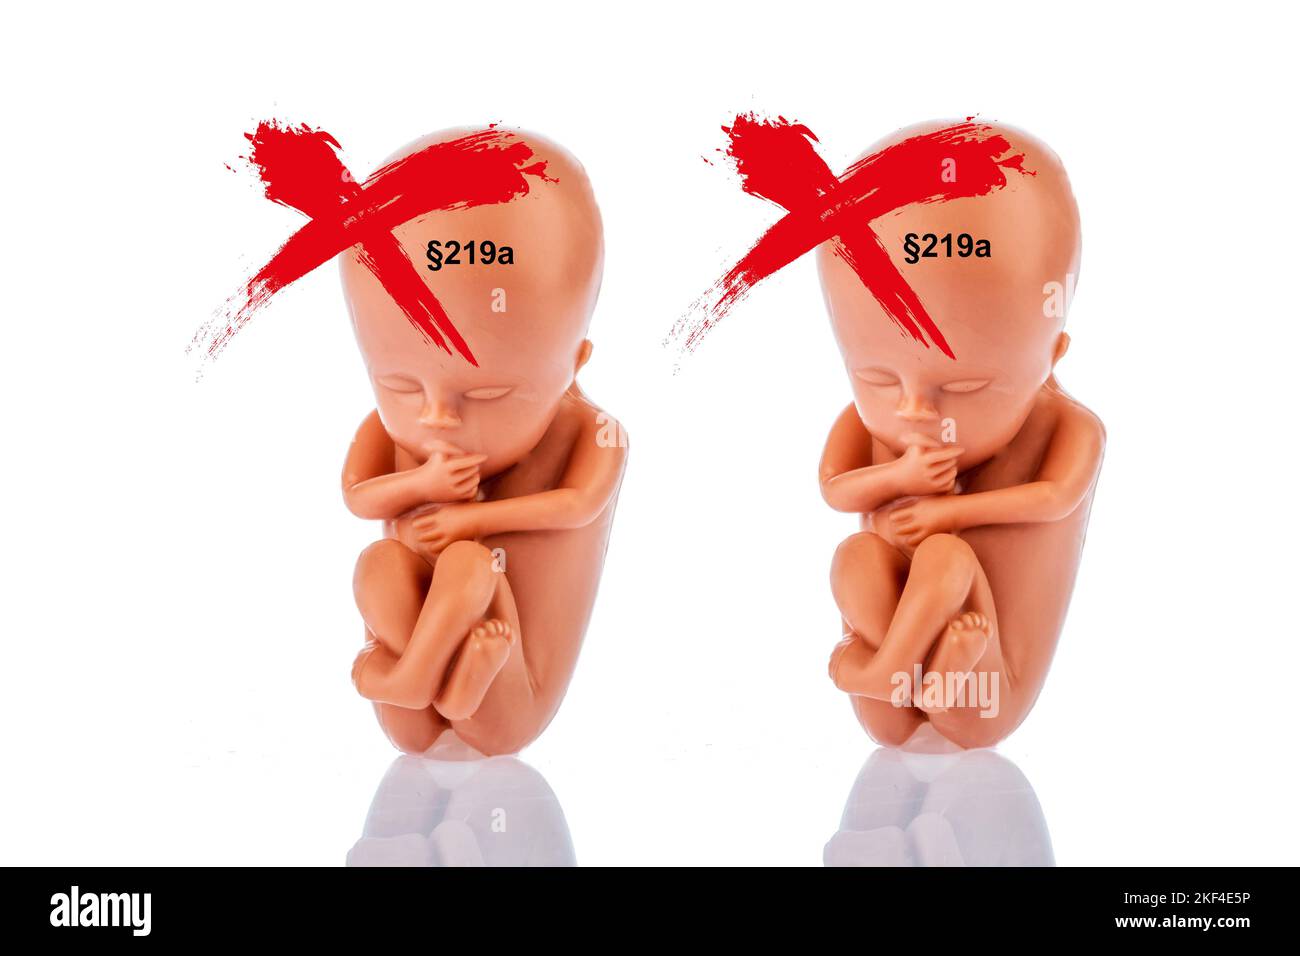 Ein 12-Wochen Alter Emybro aus Plastik. Modell für Schwangerschaft, Abtreibung und Verhütung. Schutz von ungeborenem Leben, §219a, Zwillinge, Foto Stock